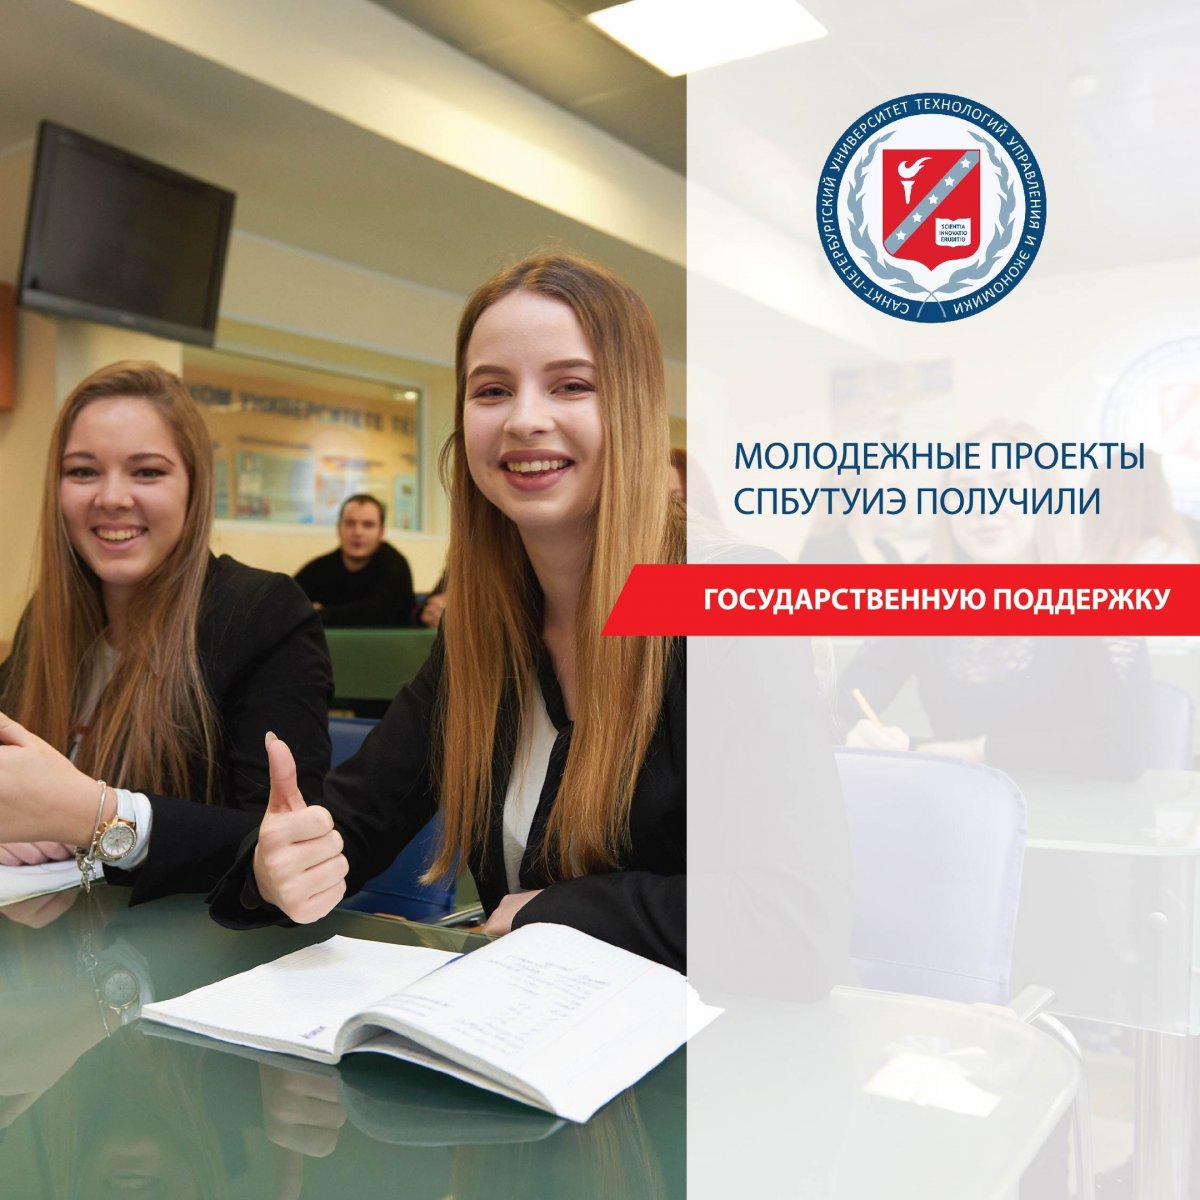 Молодежные проекты Санкт-Петербургского университета технологий управления и экономики получили государственную поддержку на сумму свыше 9 млн рублей